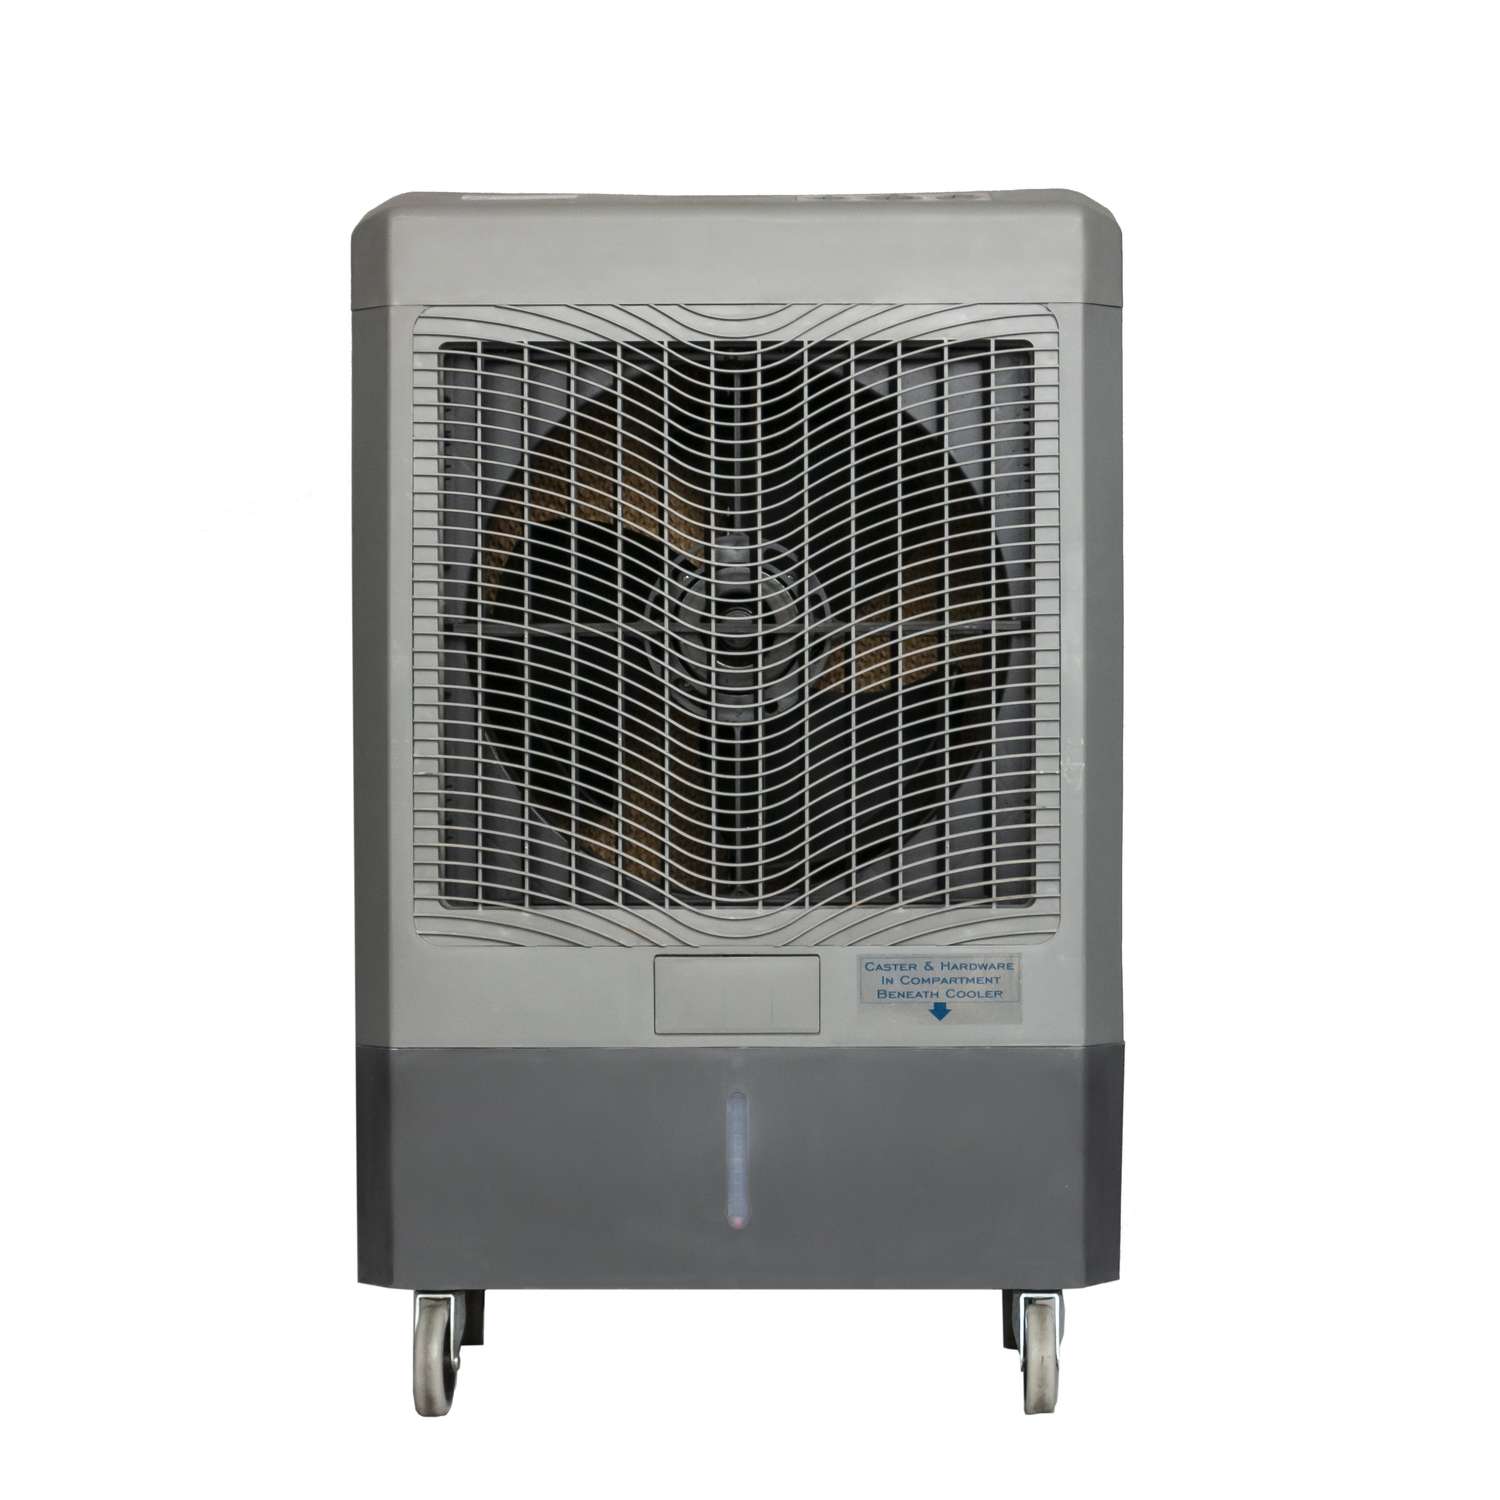 Hessaire 1600 sq. ft. Portable Evaporative Cooler 5300 CFM